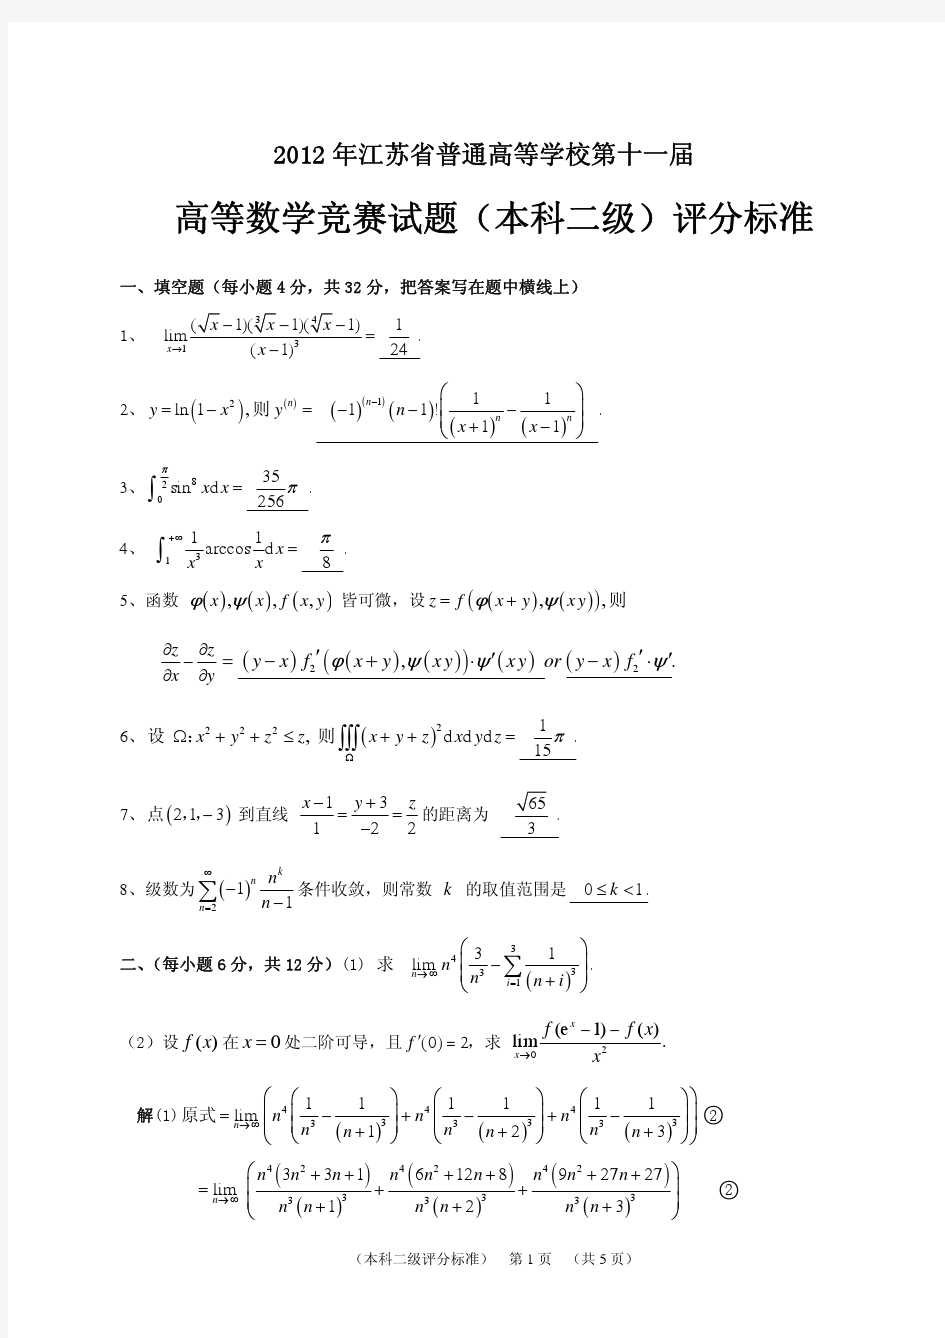 江苏省第十一届高等数学竞赛题(本科二级)评分标准